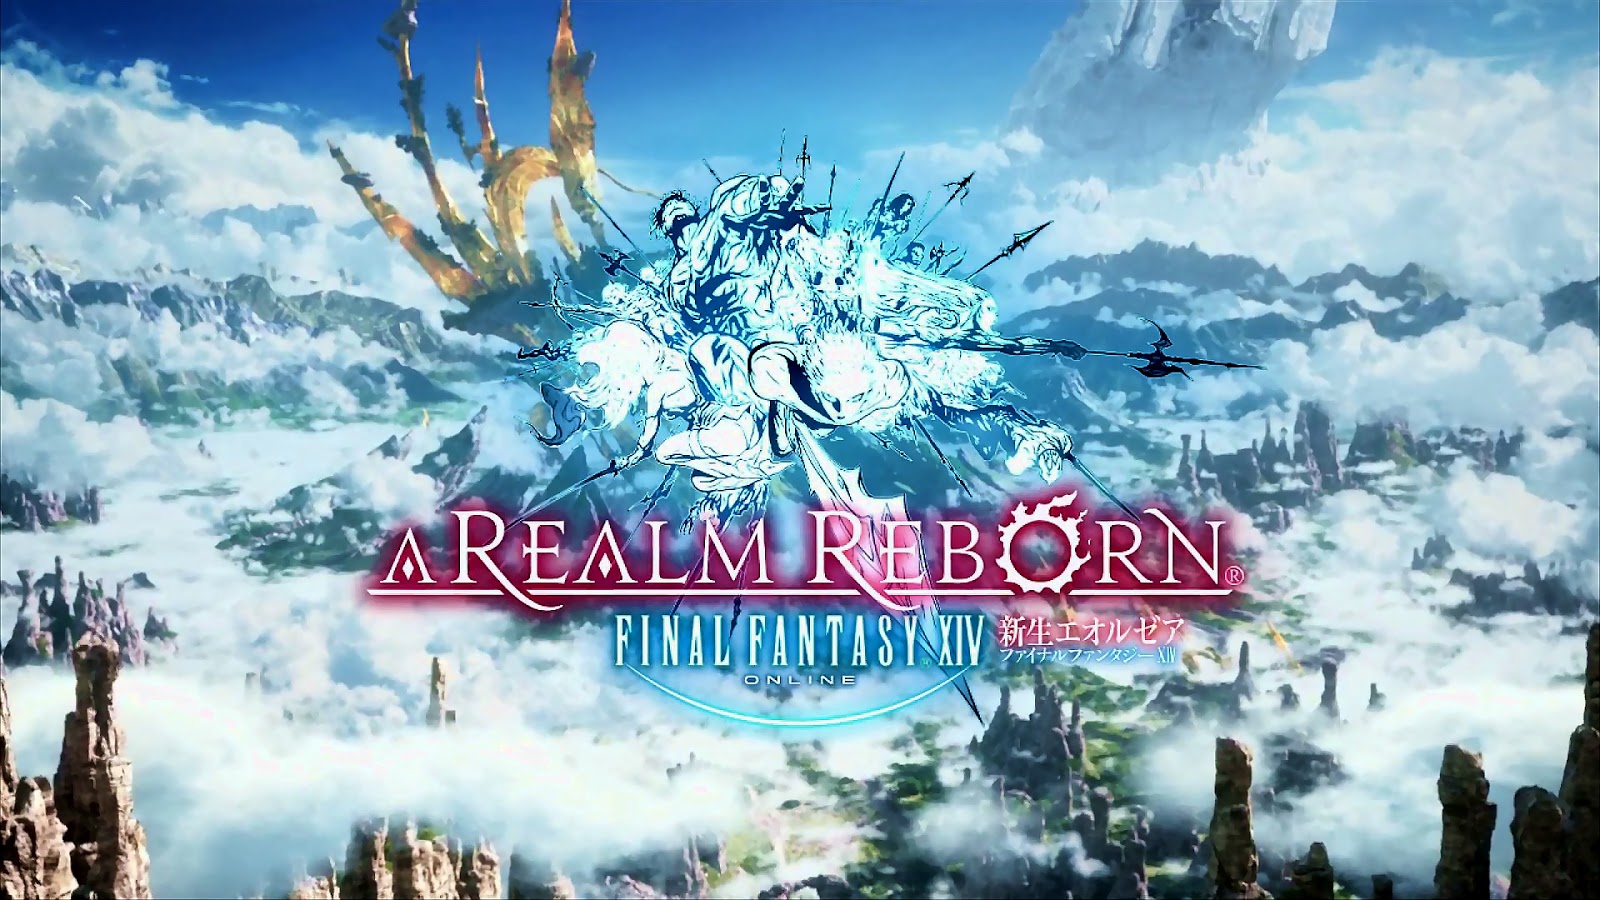 Final fantasy realm reborn download mac 10.7